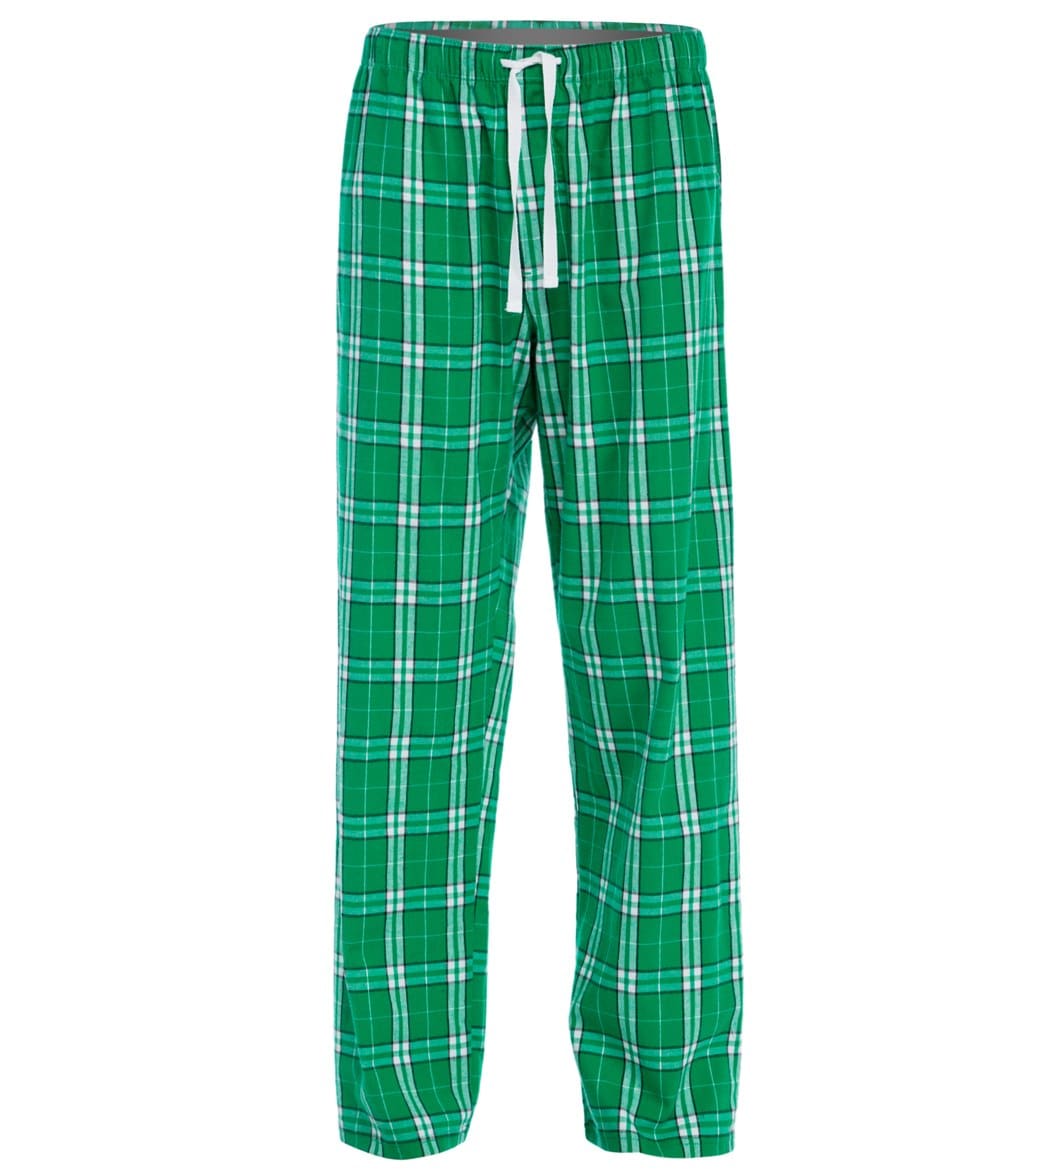 Women's Flannel Plaid Pants - Green Xxl Cotton - Swimoutlet.com